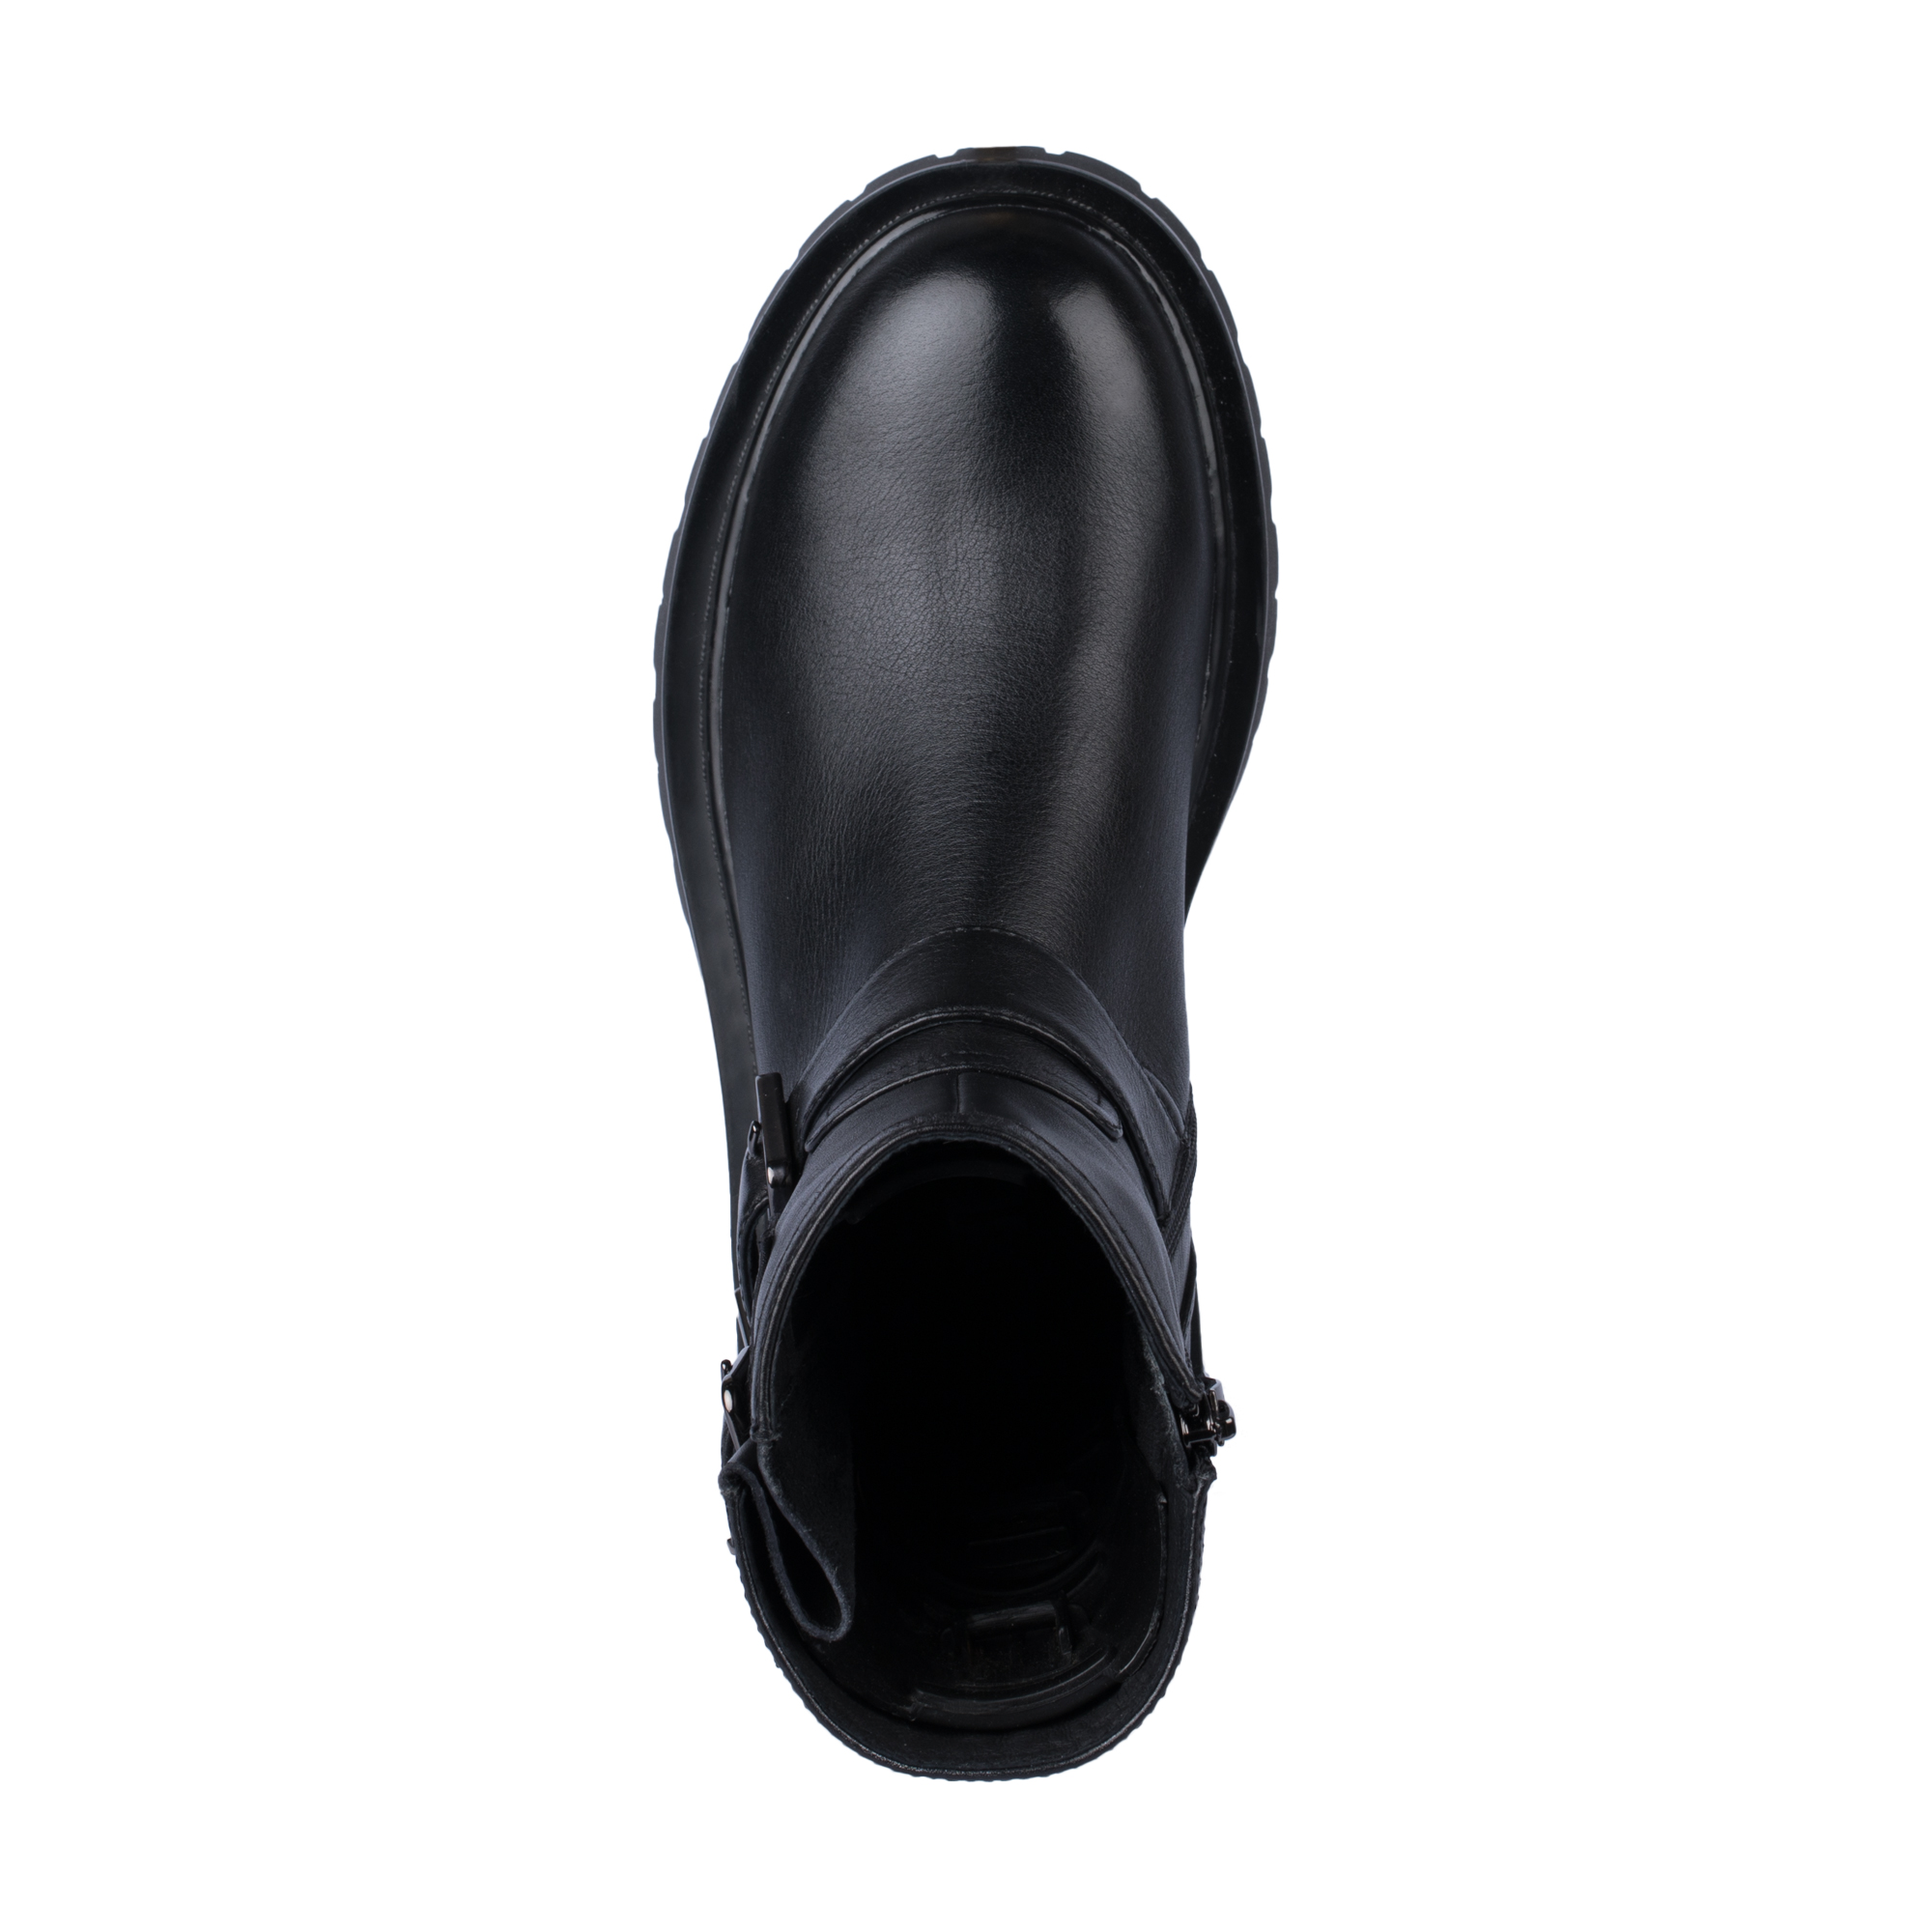 Ботинки Thomas Munz 058-980A-3102, цвет черный, размер 39 - фото 5